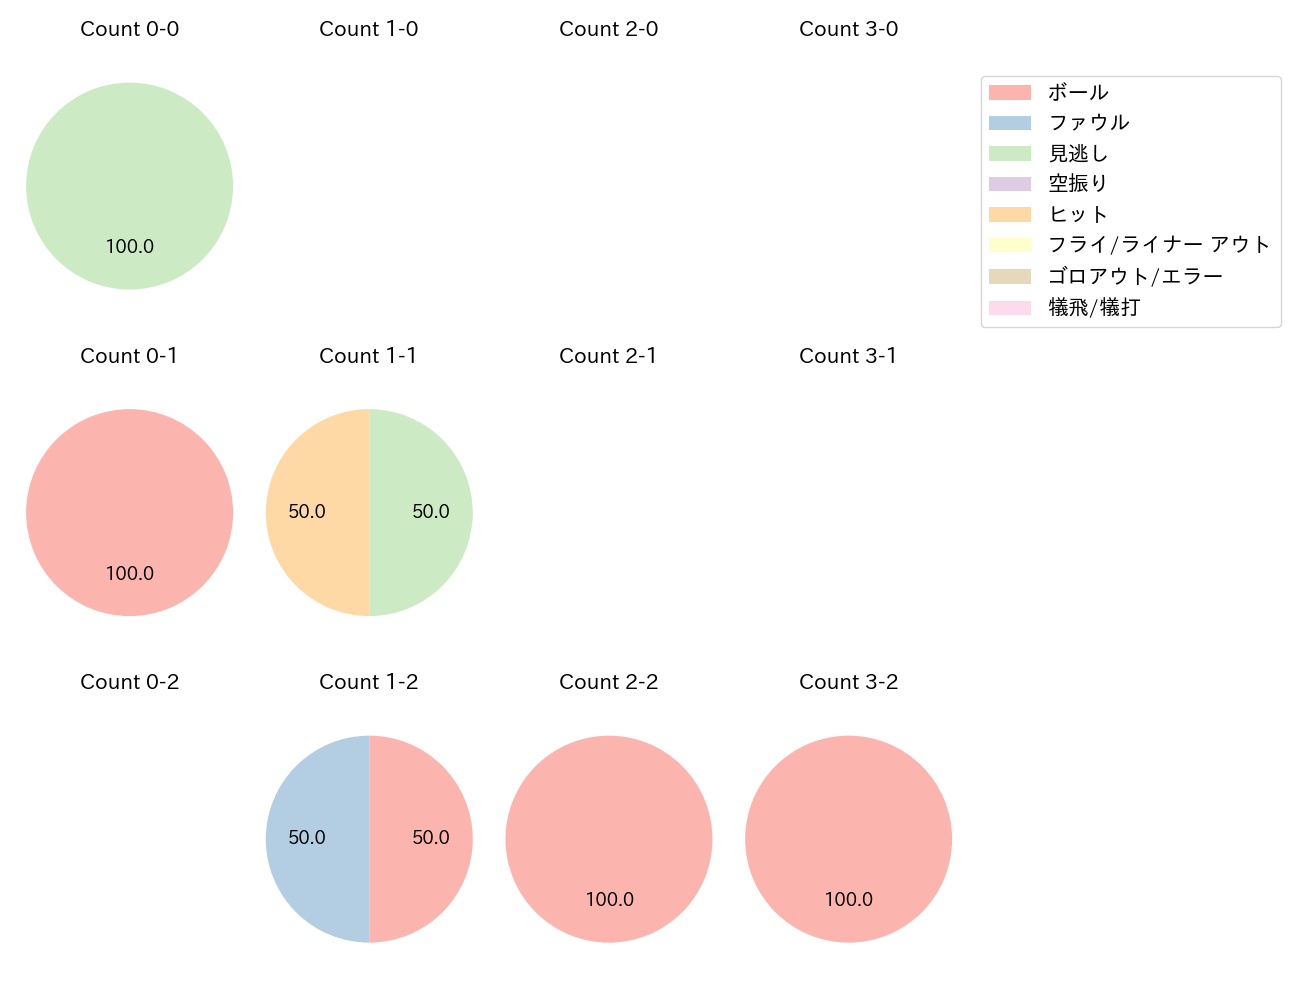 石川 雅規の球数分布(2021年4月)